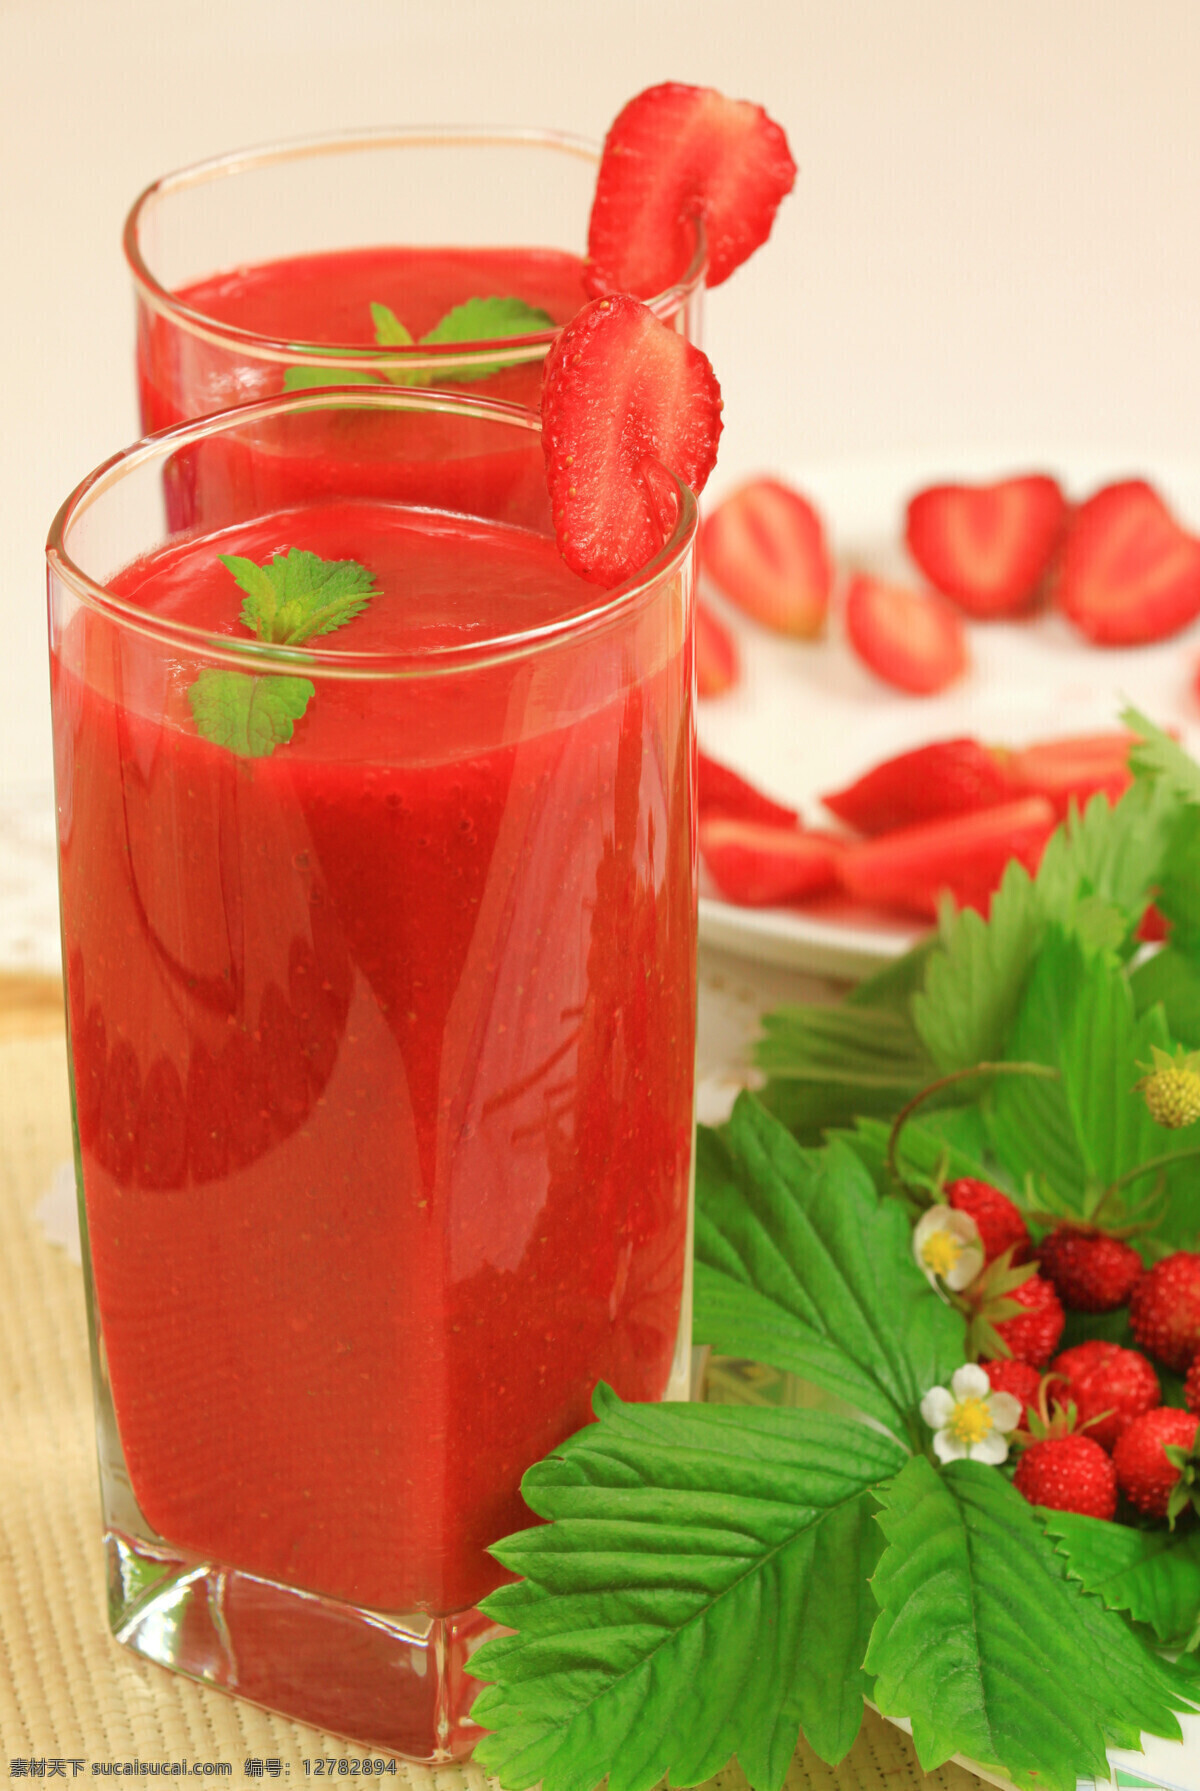 美味草莓汁 唯美 饮料 饮品 美味 果汁 新鲜 鲜果 营养 健康 草莓汁 草莓 餐饮美食 饮料酒水